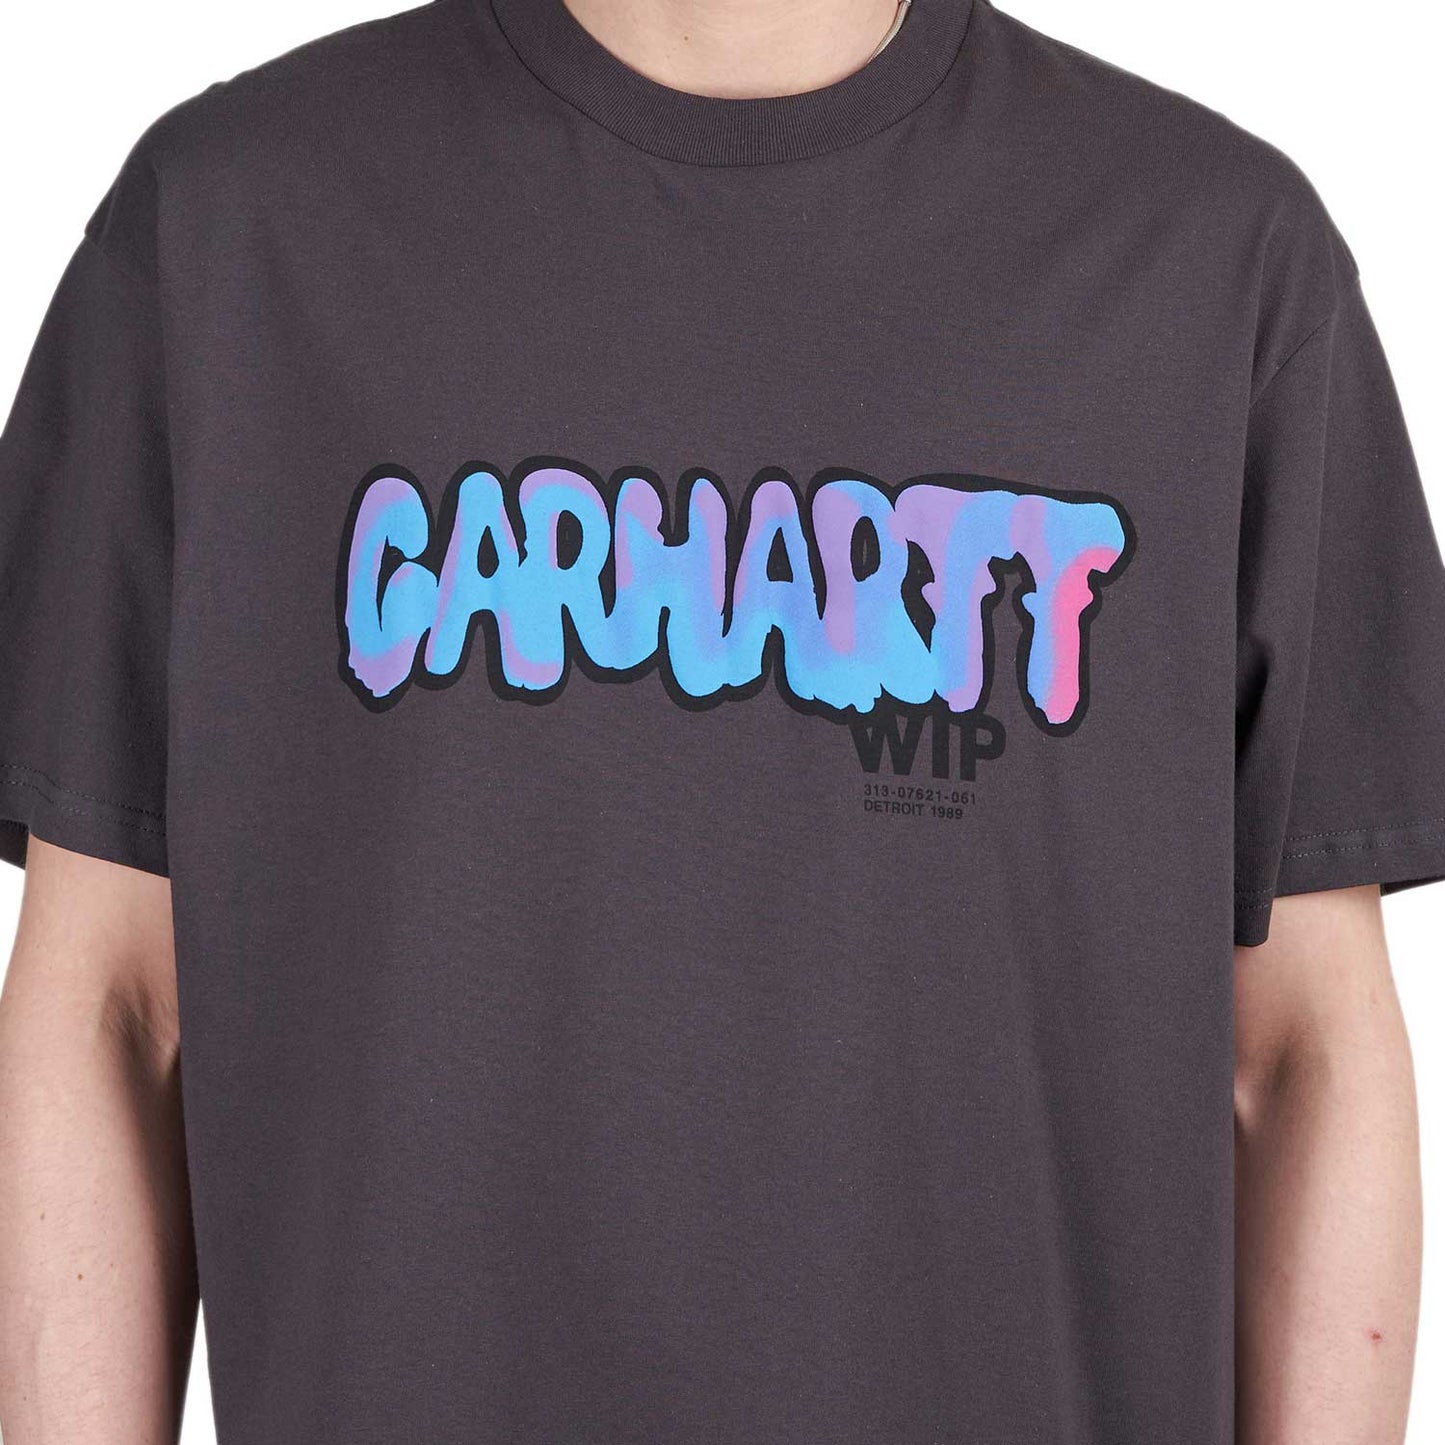 Carhartt WIP S/S Drip T-Shirt (Schwarz)  - Cheap Juzsports Jordan Outlet